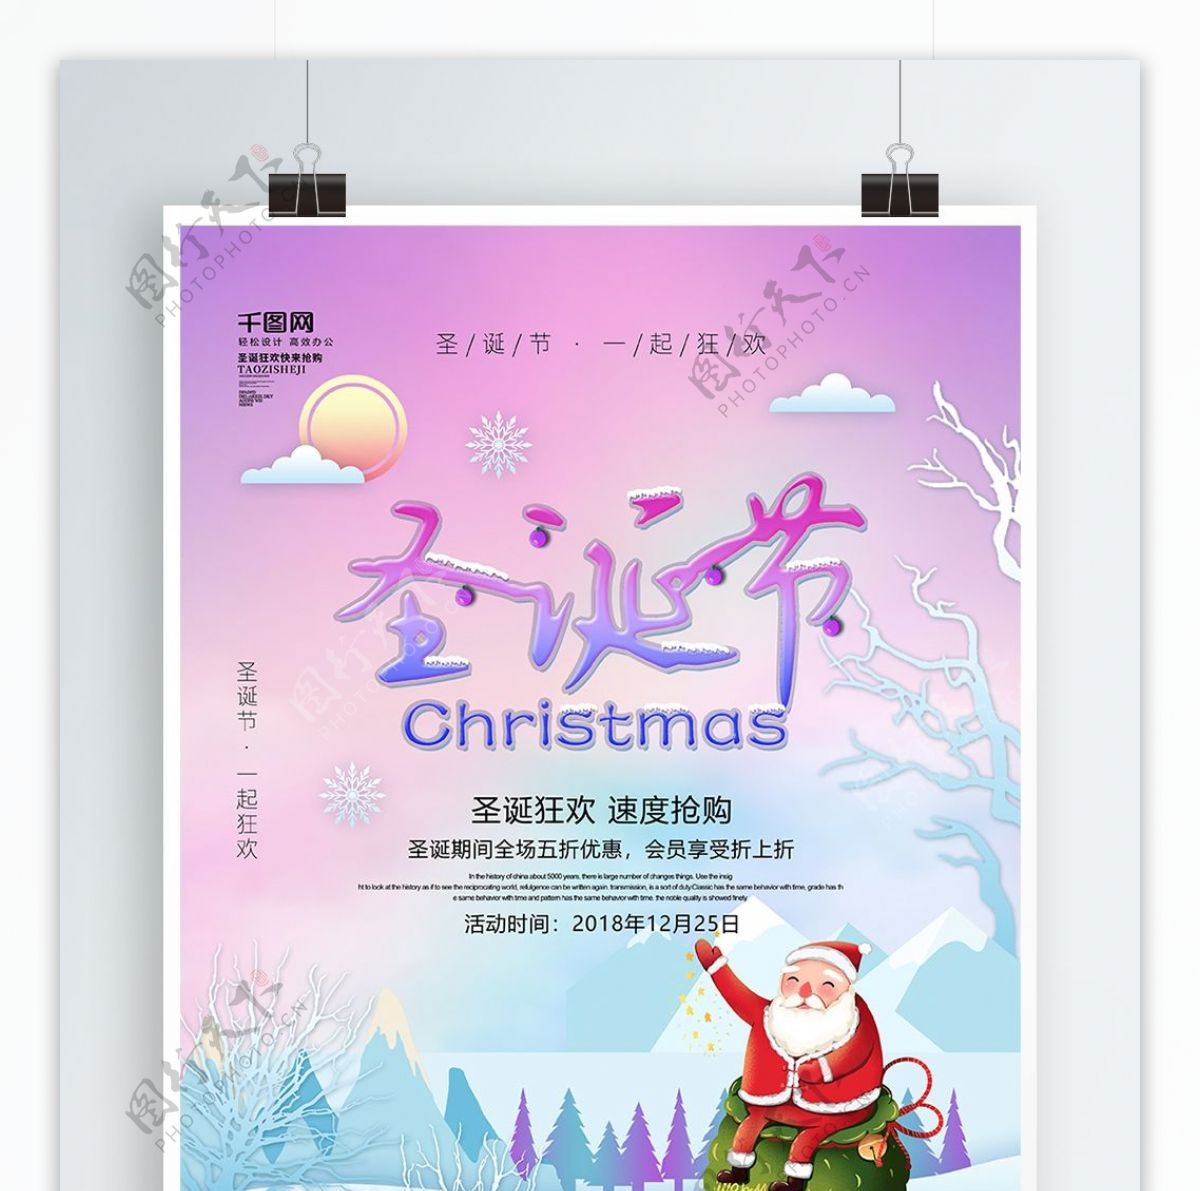 原创手绘插画梦幻紫色圣诞节节日海报